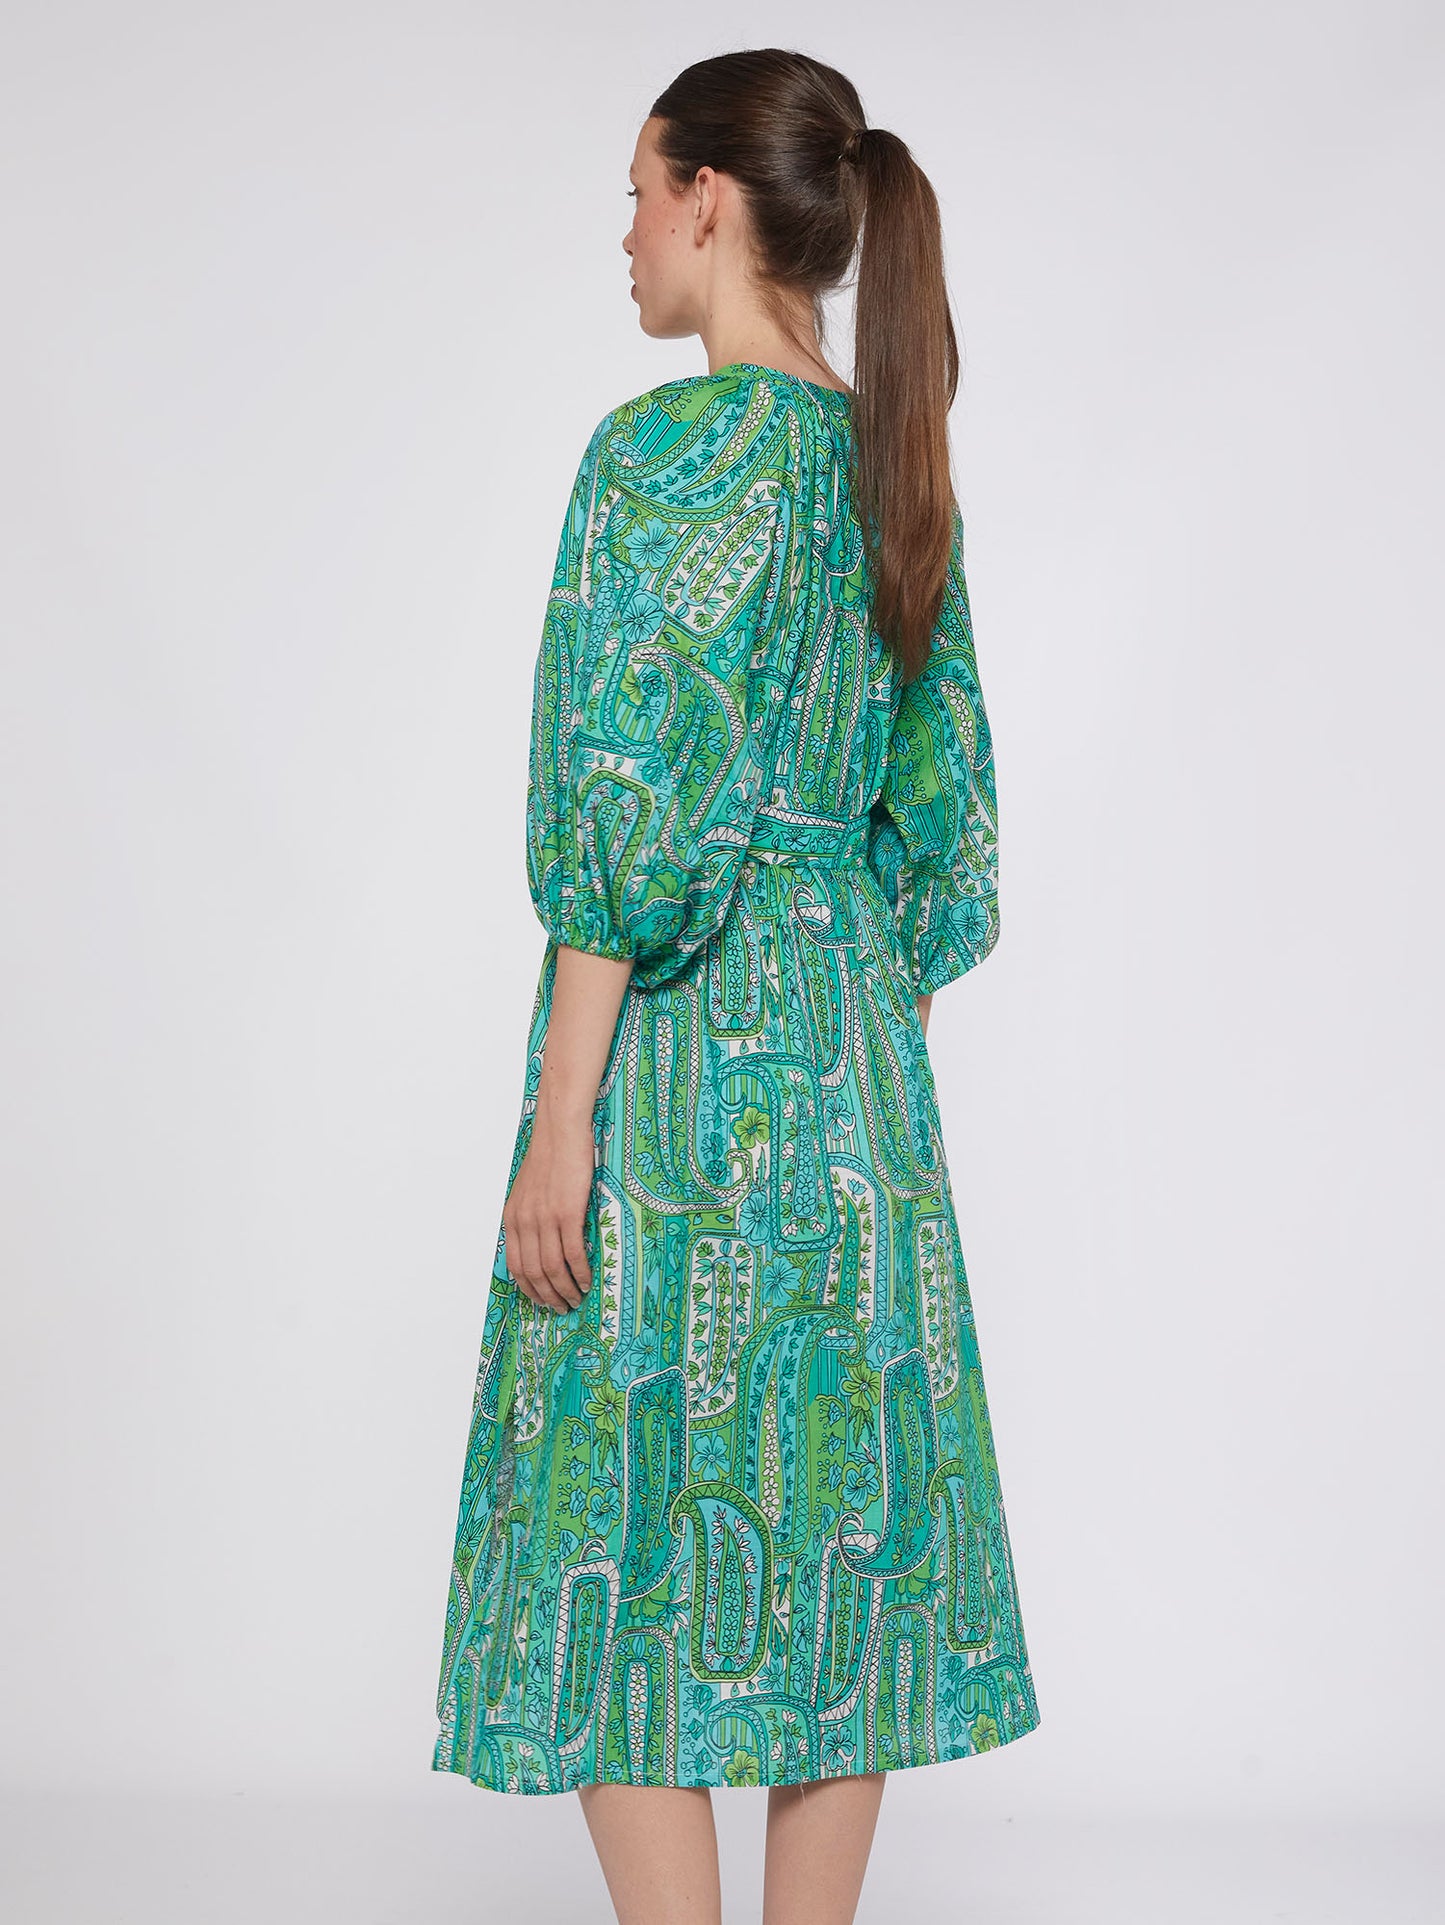 Claudette Dress - Green Paisley